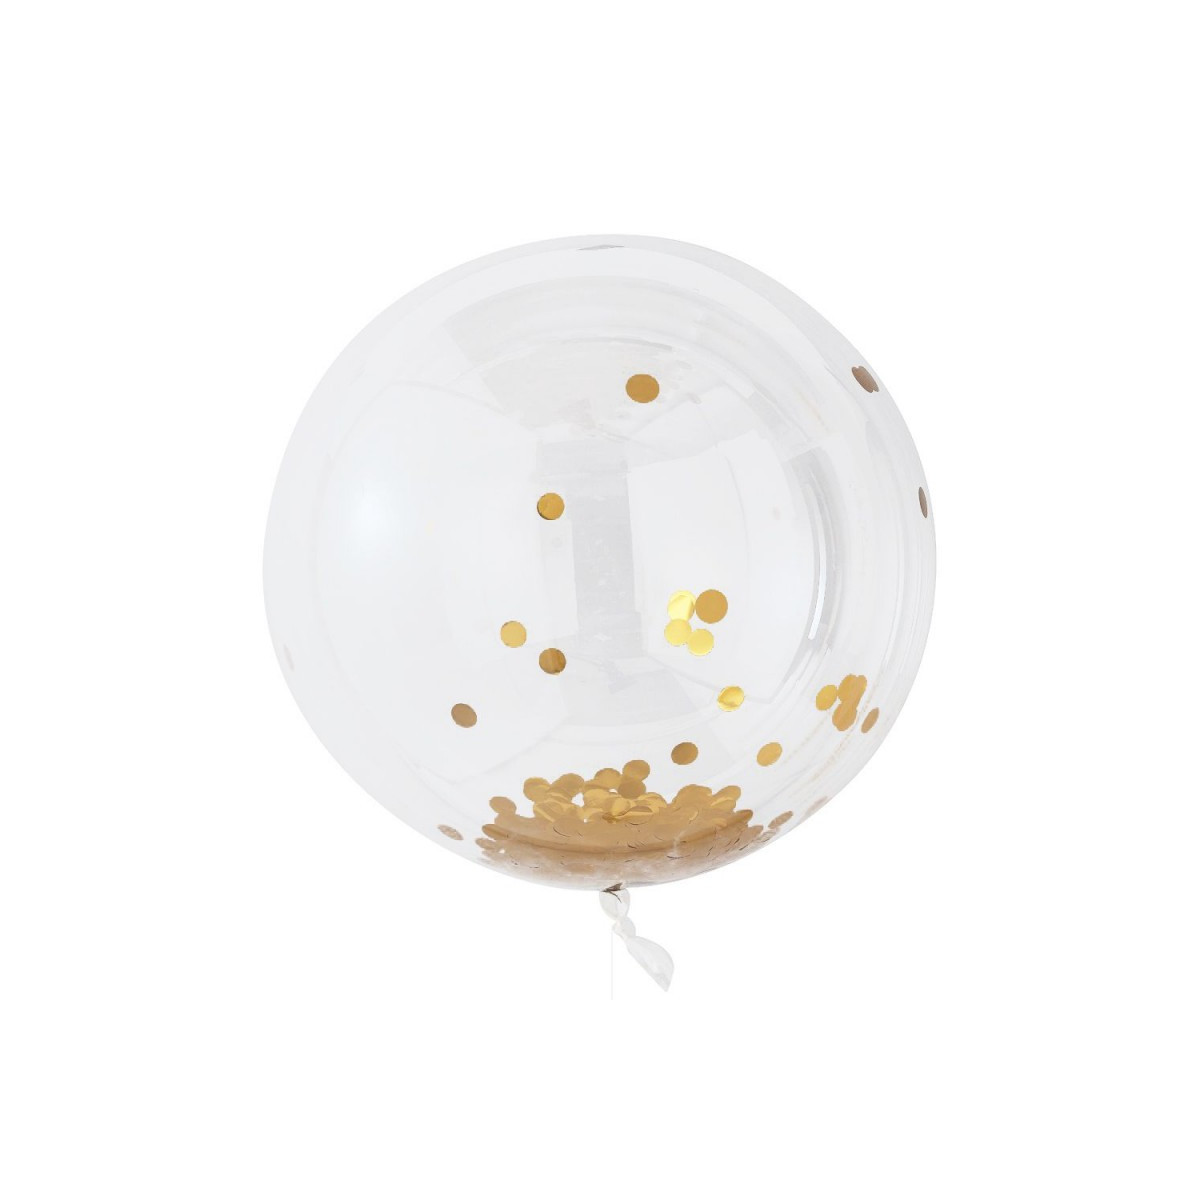 3 x Ballon Bulle 90 cm + confetti Or - mes fetes